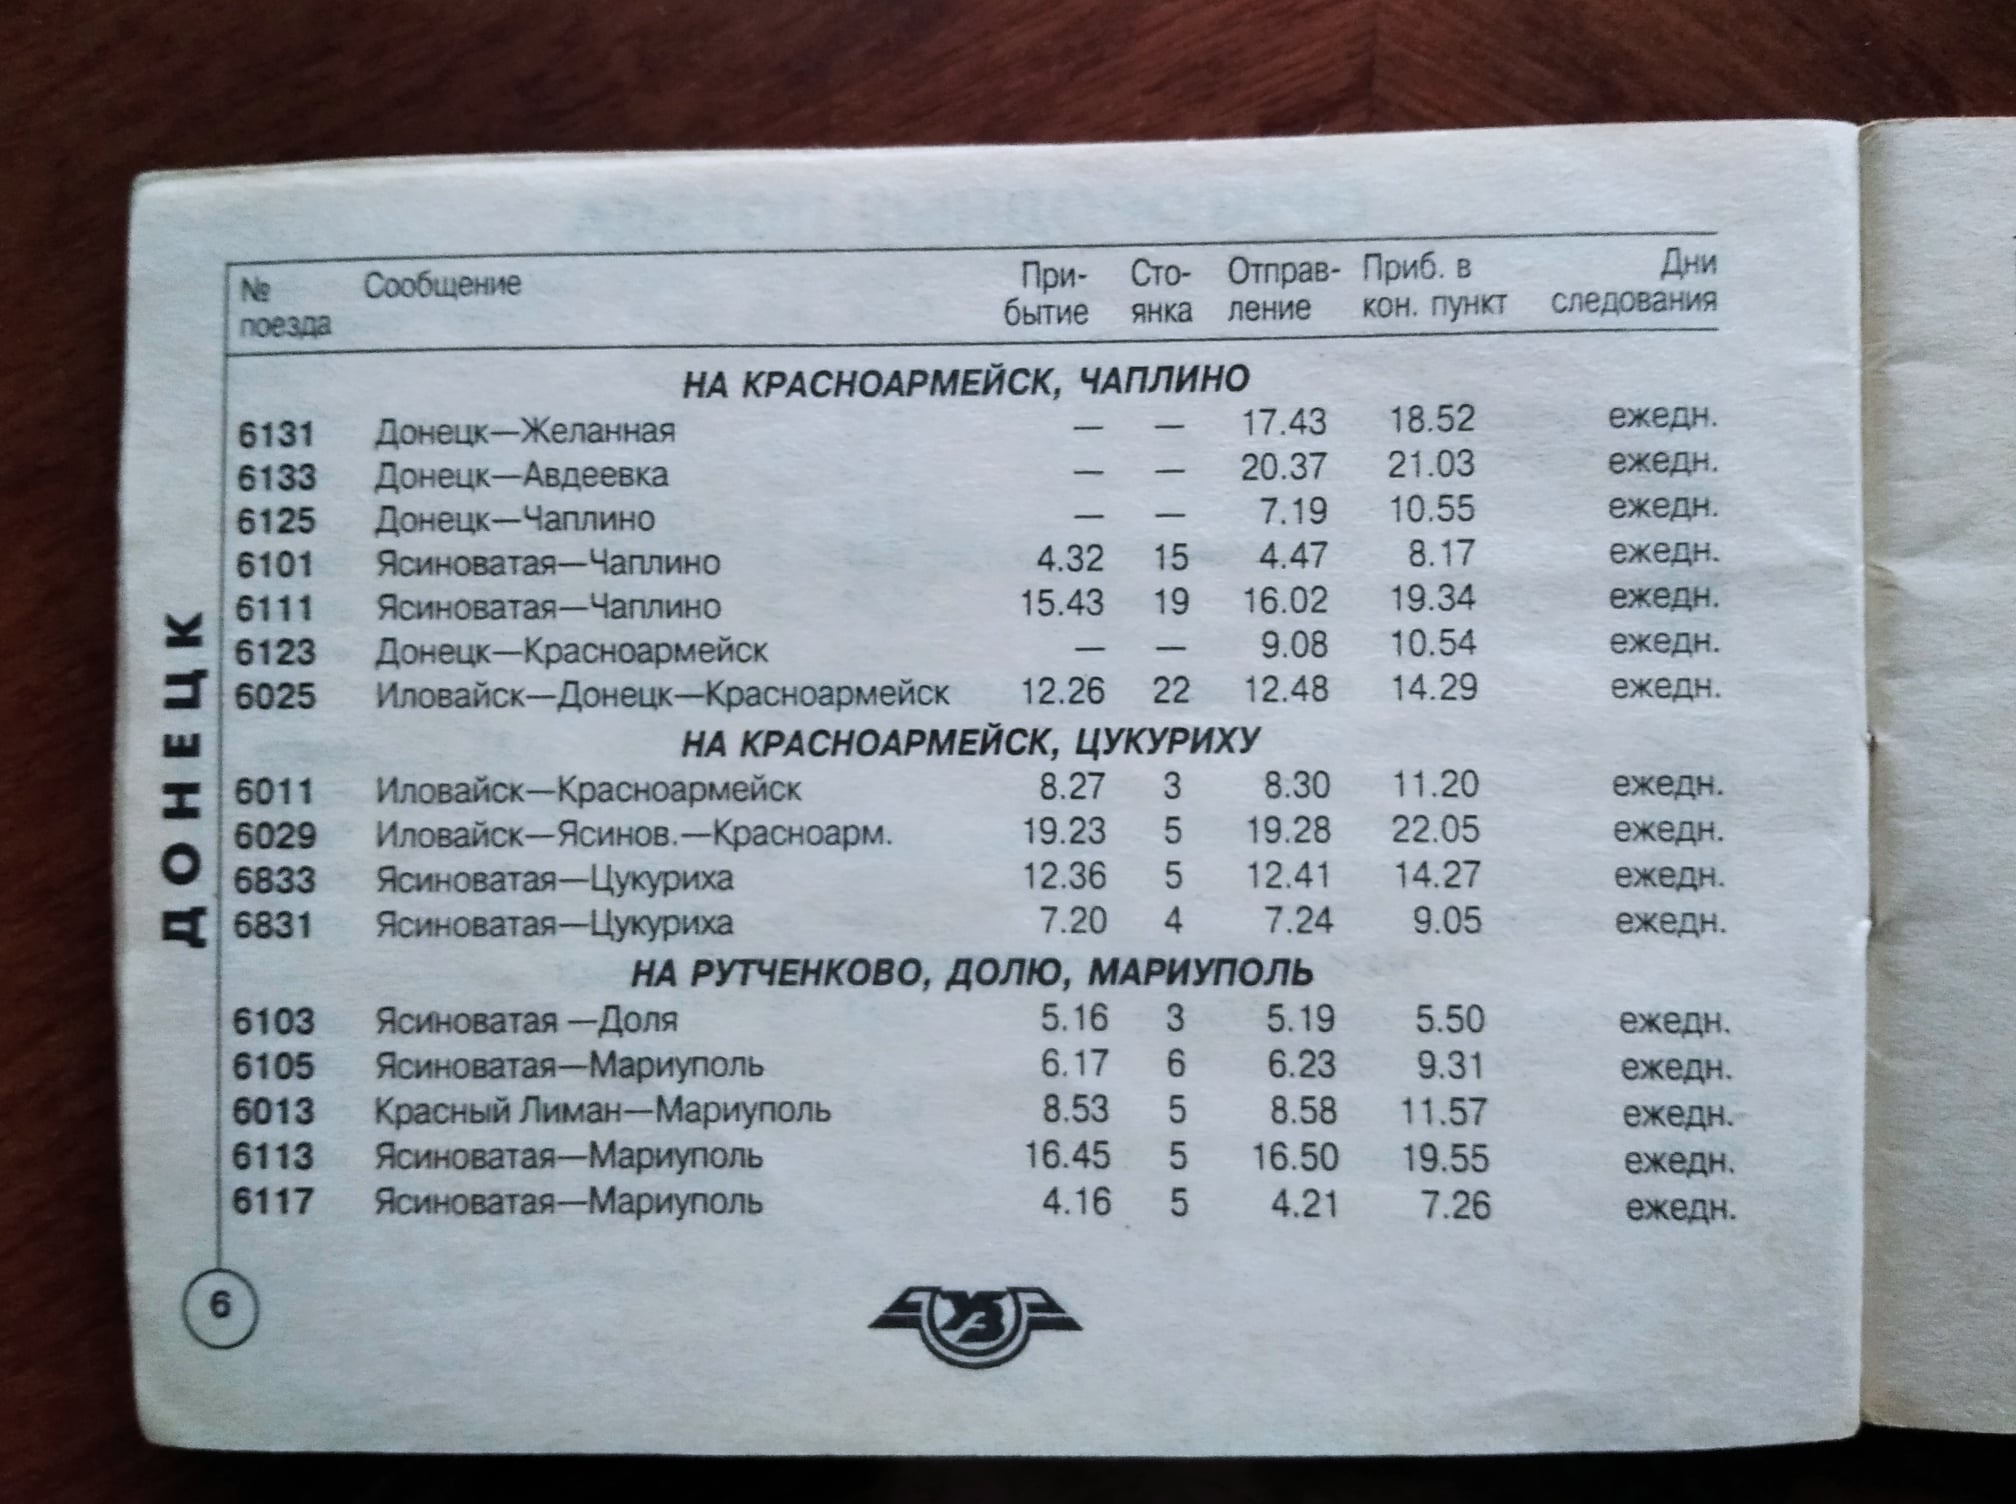 ЖД расписание 2001 Донецк